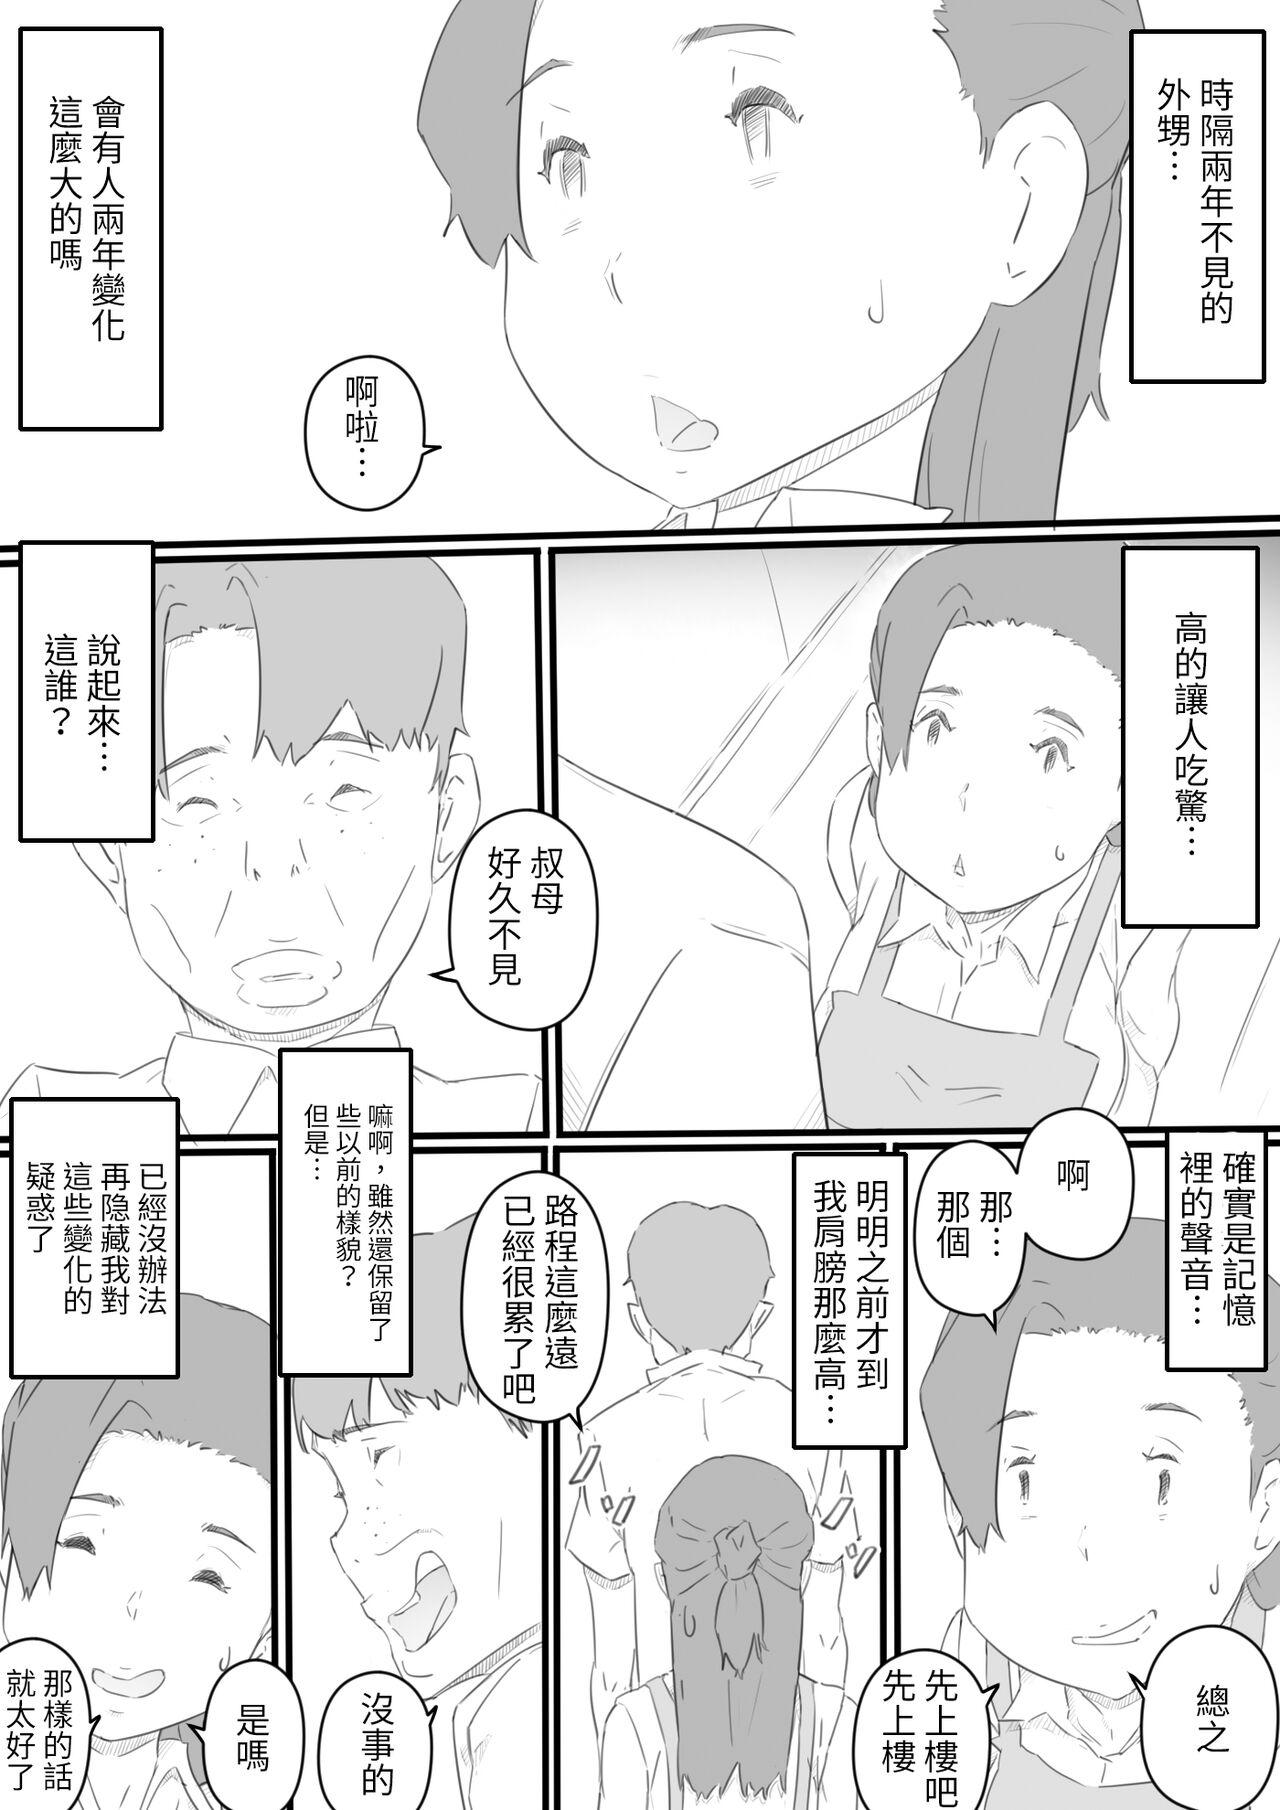 Girl hi ki komo ri no oi xtu ko to三 nin no hitozuma‐ hito natu no omo i de…‐ Best Blowjob - Page 6